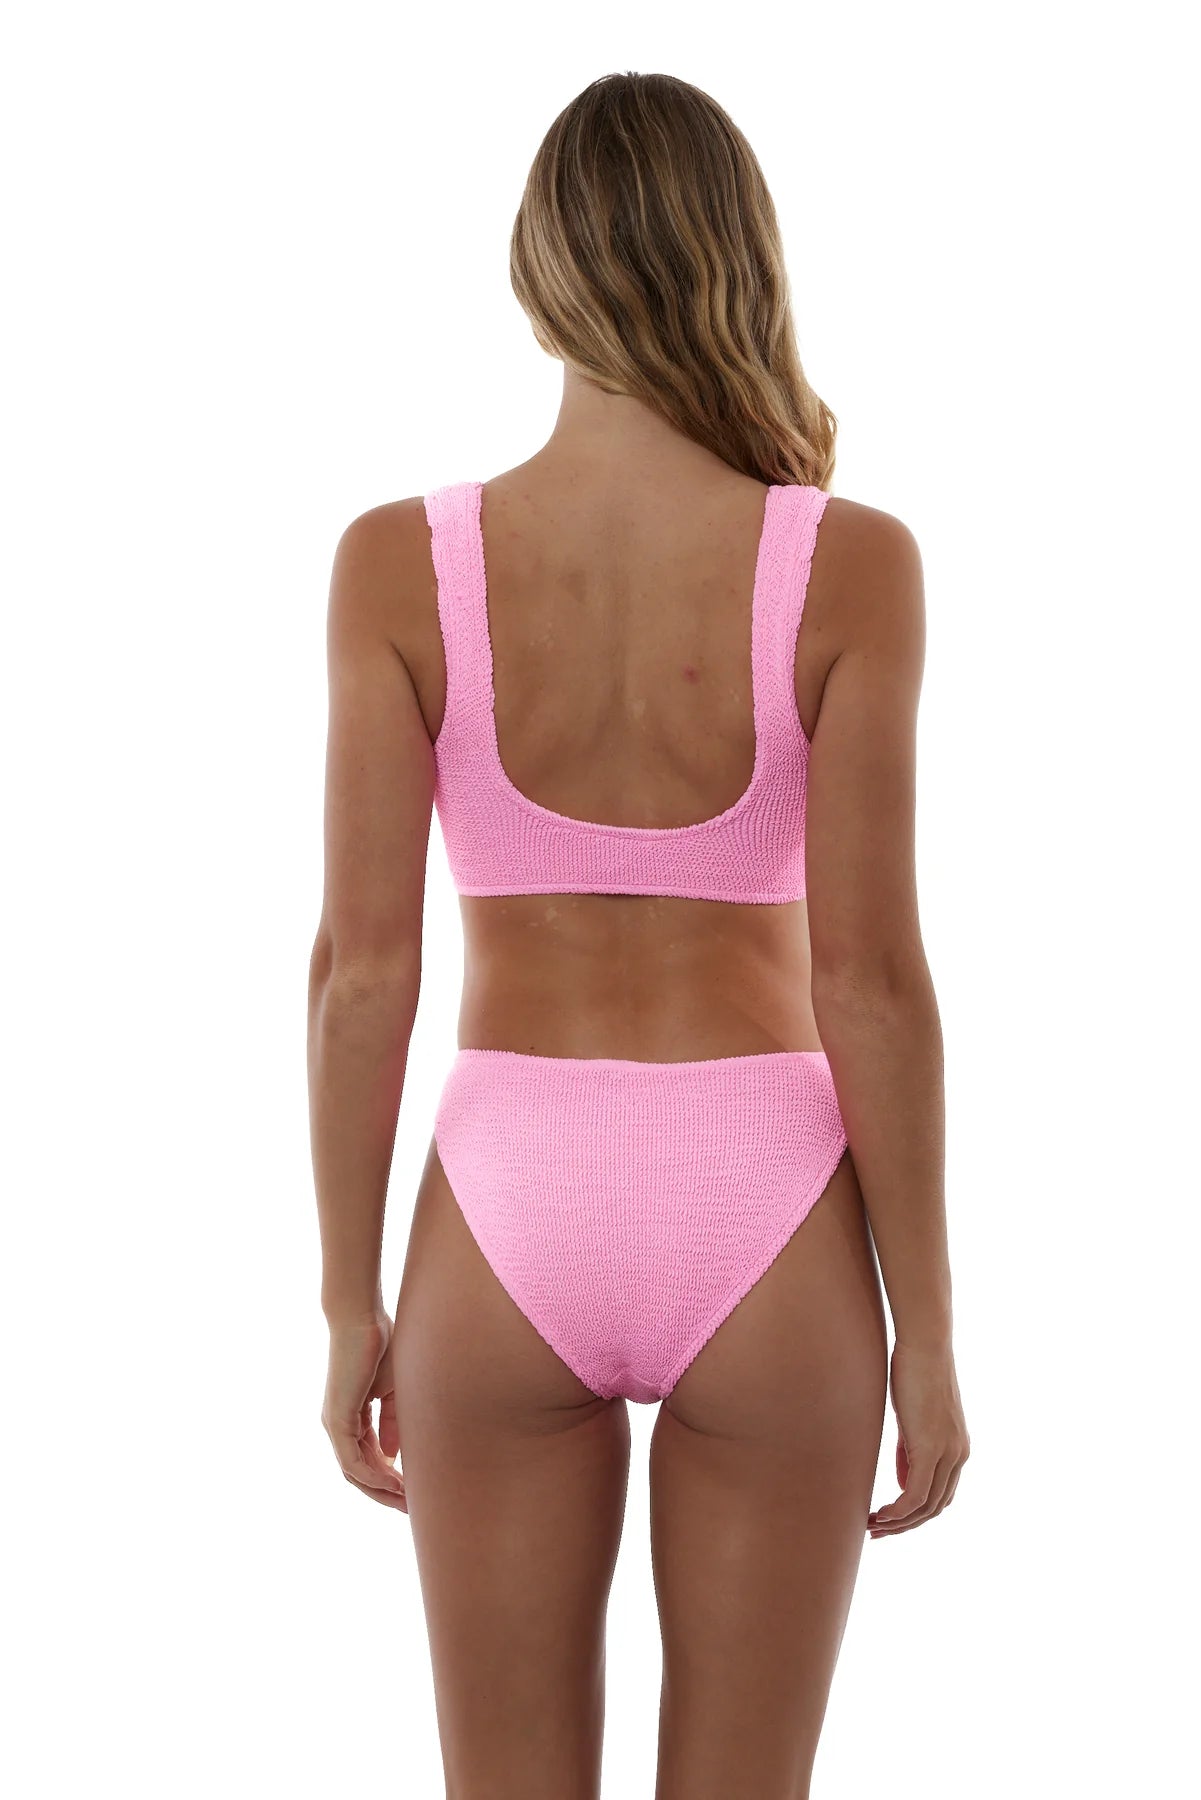 Cancun Classic Seamless One Size Bikini Top